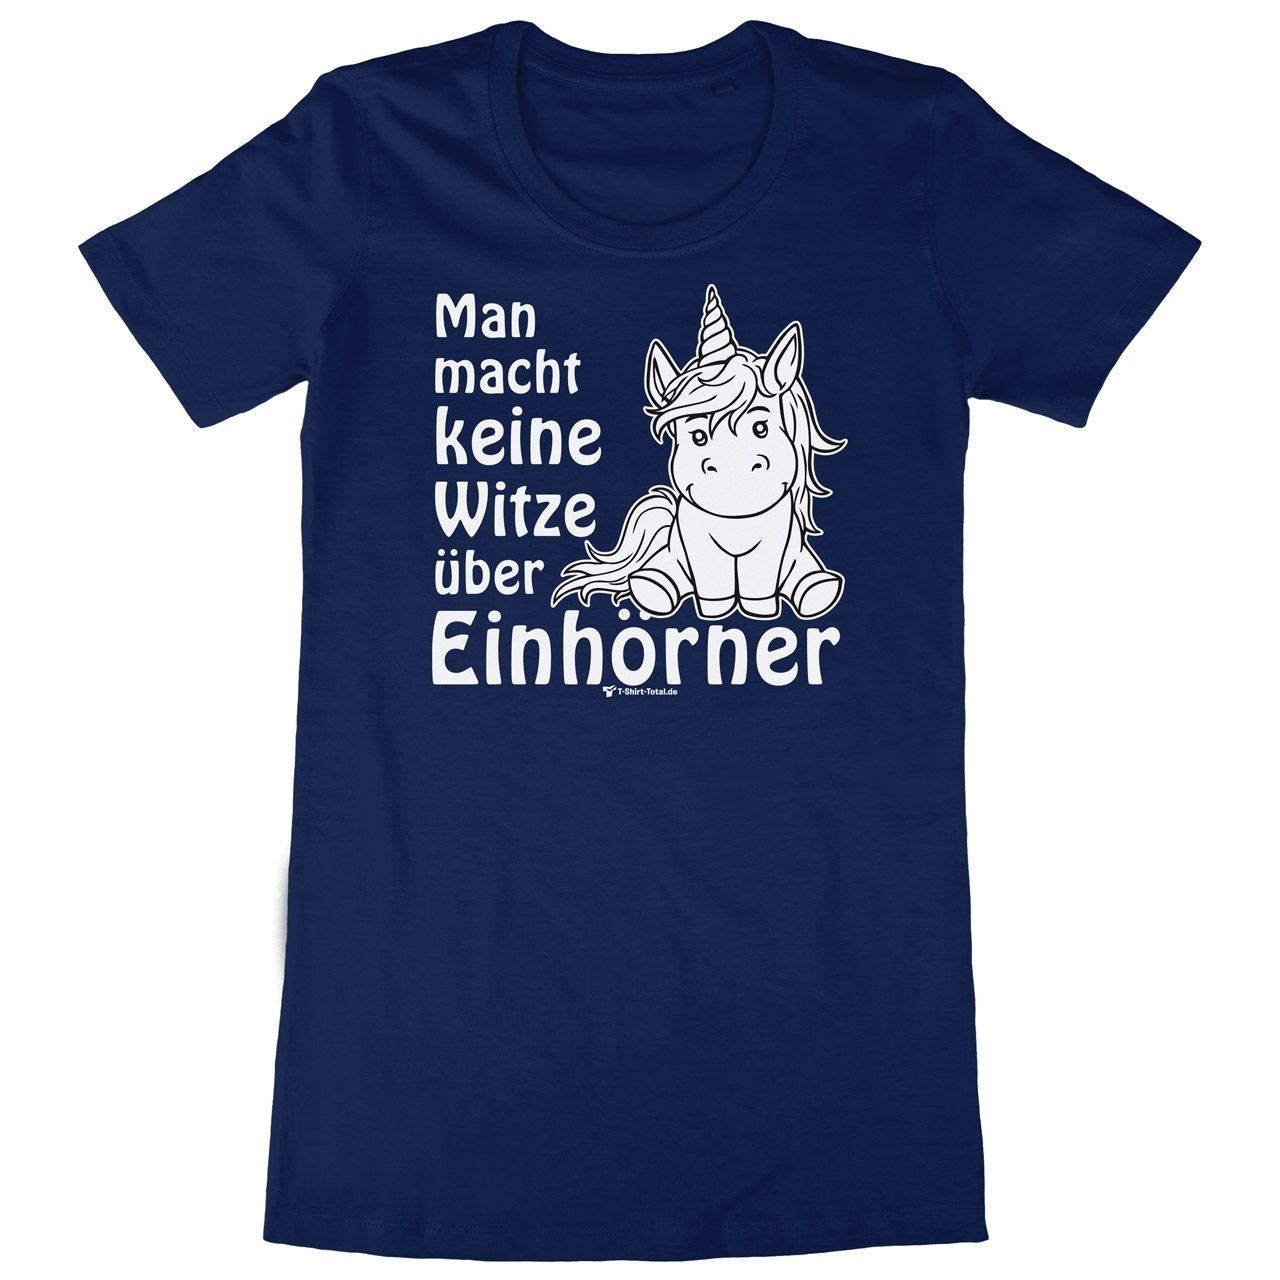 Einhorn Witze Woman Long Shirt navy Medium